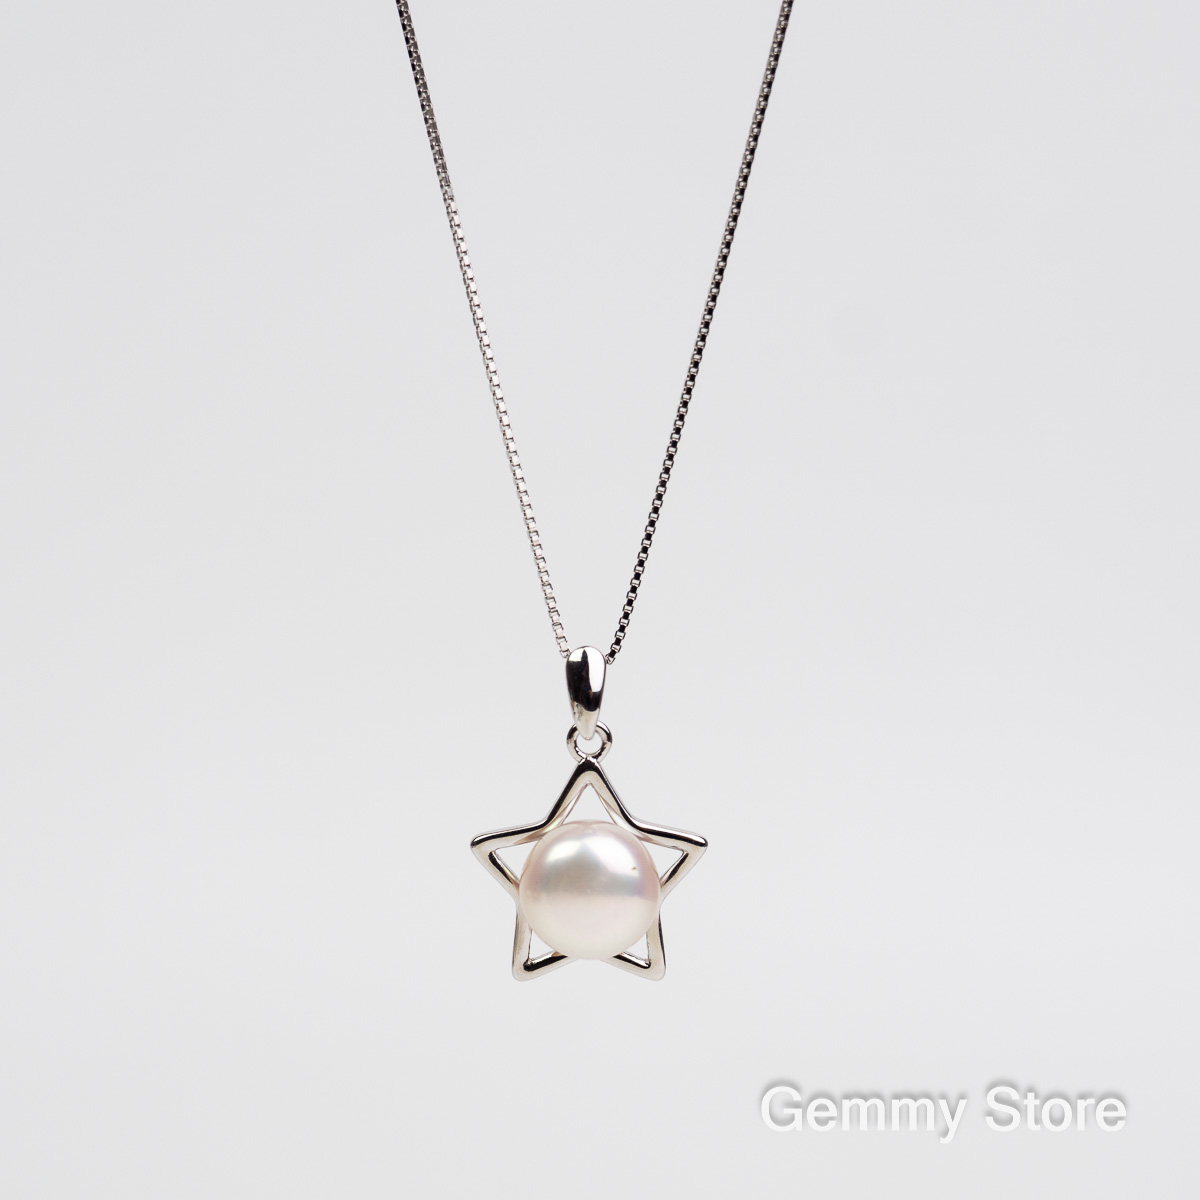 Dây chuyền bạc ngọc trai trắng ngôi sao T23.121 | Gemmy Store